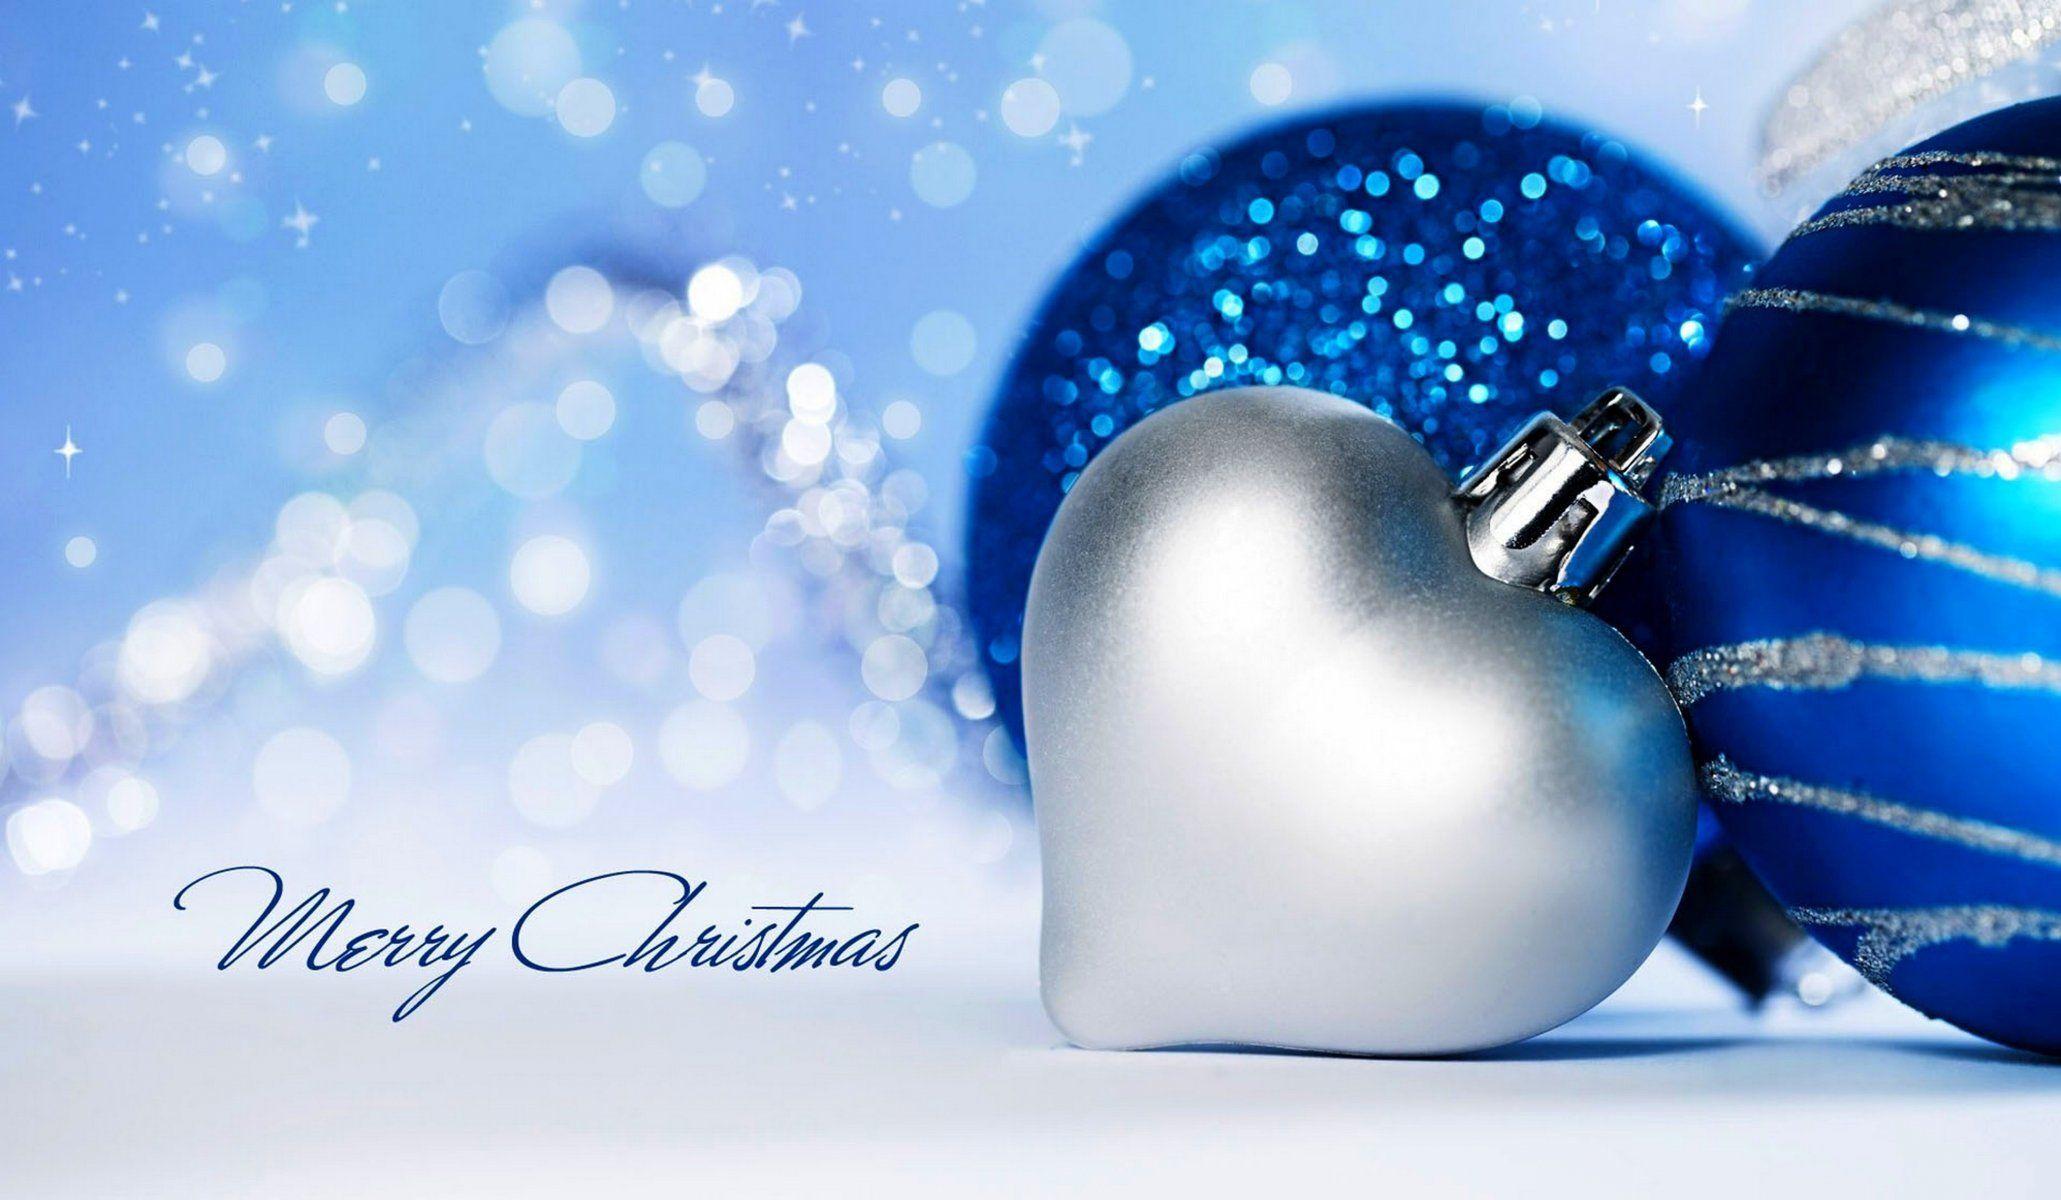 HD Wallpaper: Heart Ornaments Wallpaper, Heart Ornaments